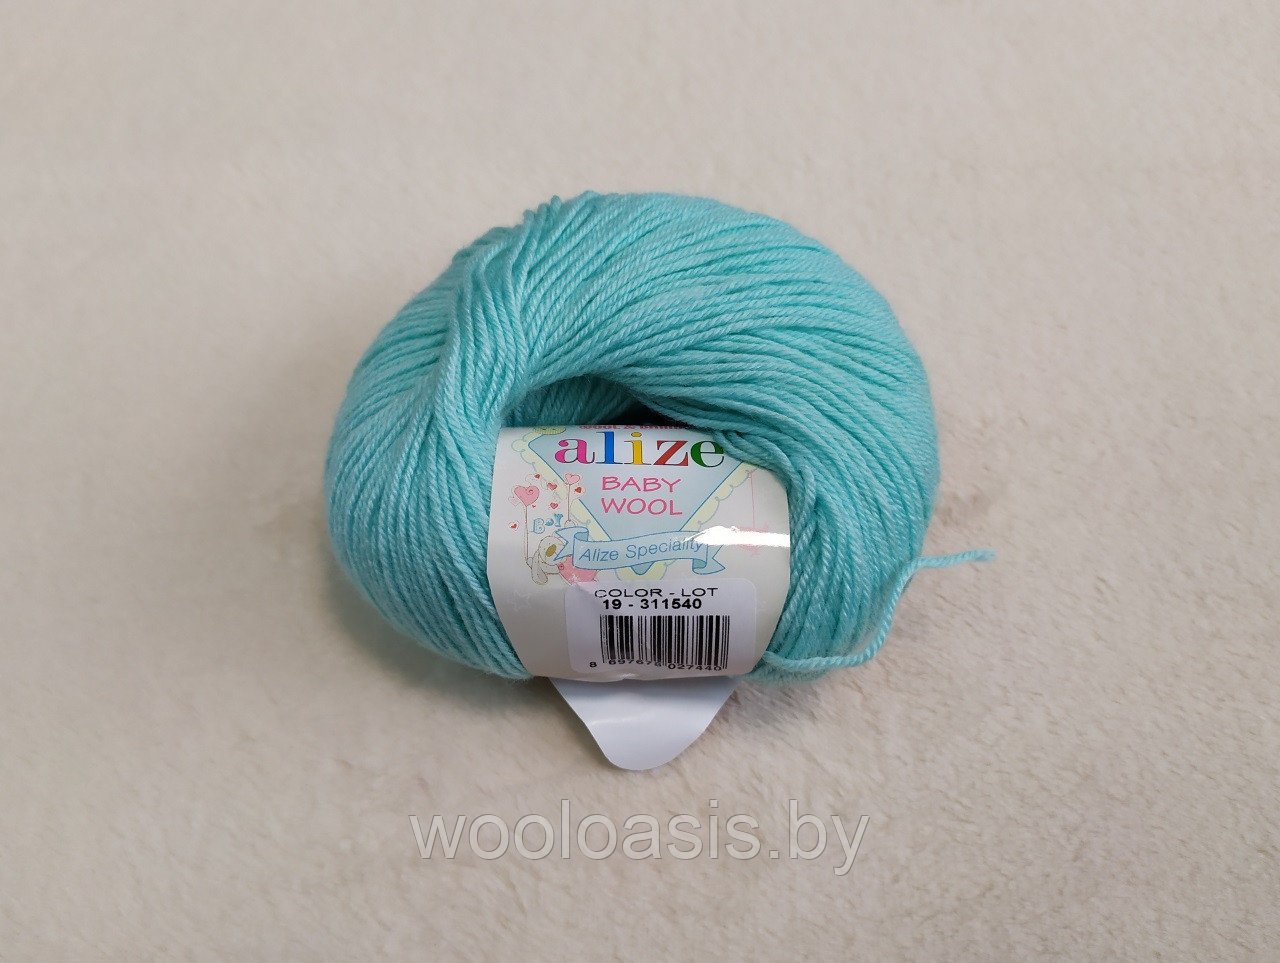 Пряжа Alize Baby Wool, Ализе Беби Вул, турецкая, шерсть, акрил, бамбук, для ручного вязания (цвет 19)